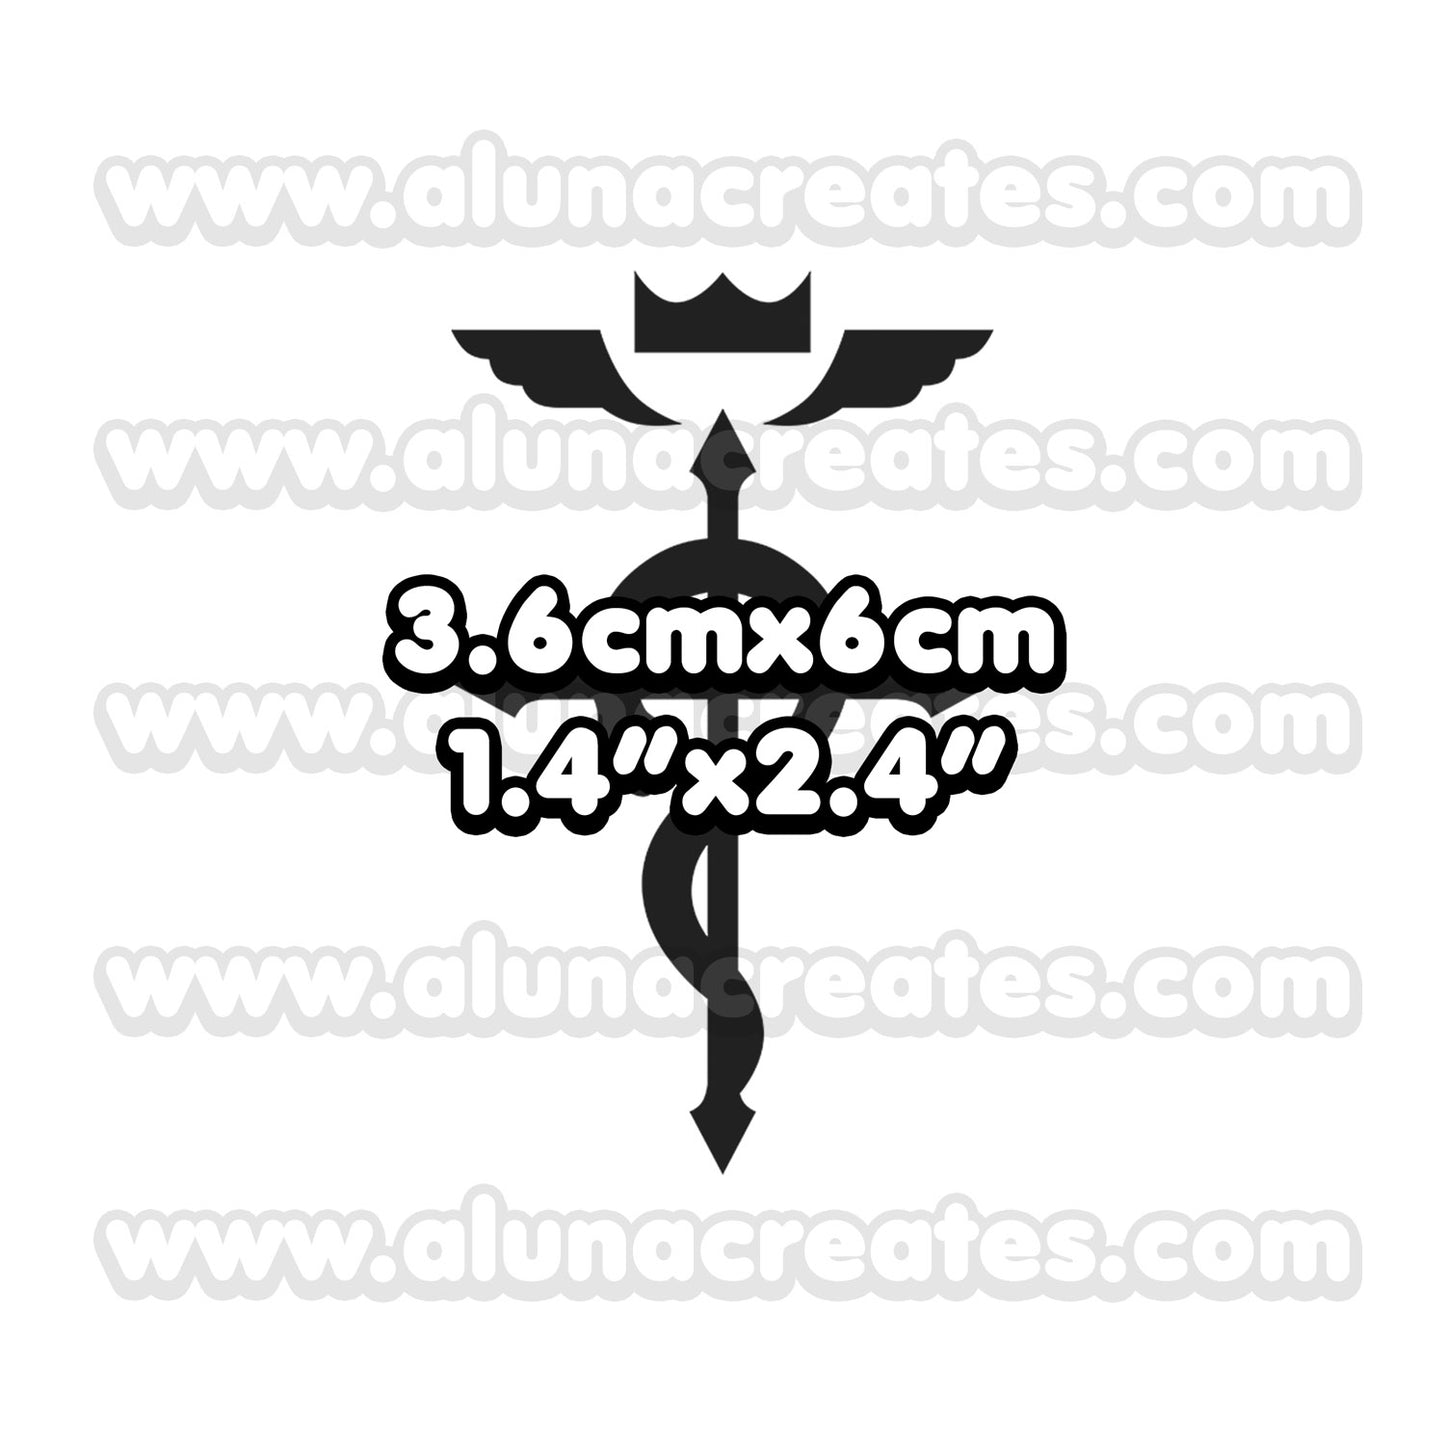 Izumi Curtis - Fullmetal Alchemist | Temporary Tattoos | SET OF 3 - AlunaCreates